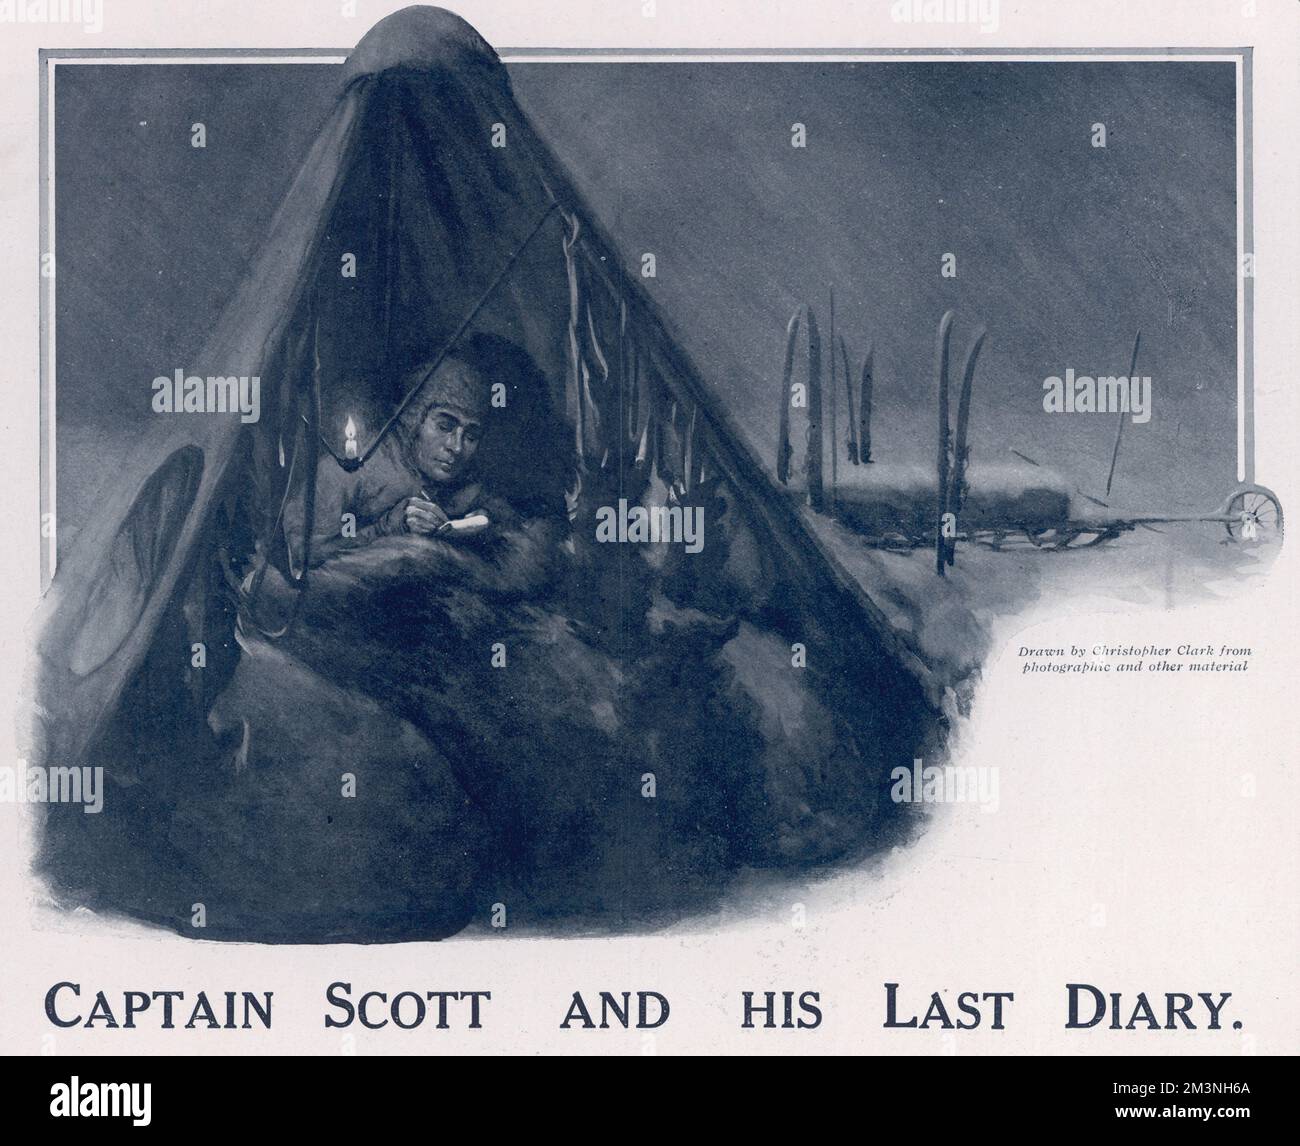 Künstlereindruck von Captain Scott, der während seiner Expedition zum Südpol, bei der er und seine vier Gefährten ums Leben kamen, in sein Tagebuch in seinem Zelt schreibt. Er sitzt in einem Schlafsack und schreibt im Licht einer Kerze, während die schneebedeckten Schlitten des Teams draußen zu sehen sind. Datum: 1913 Stockfoto